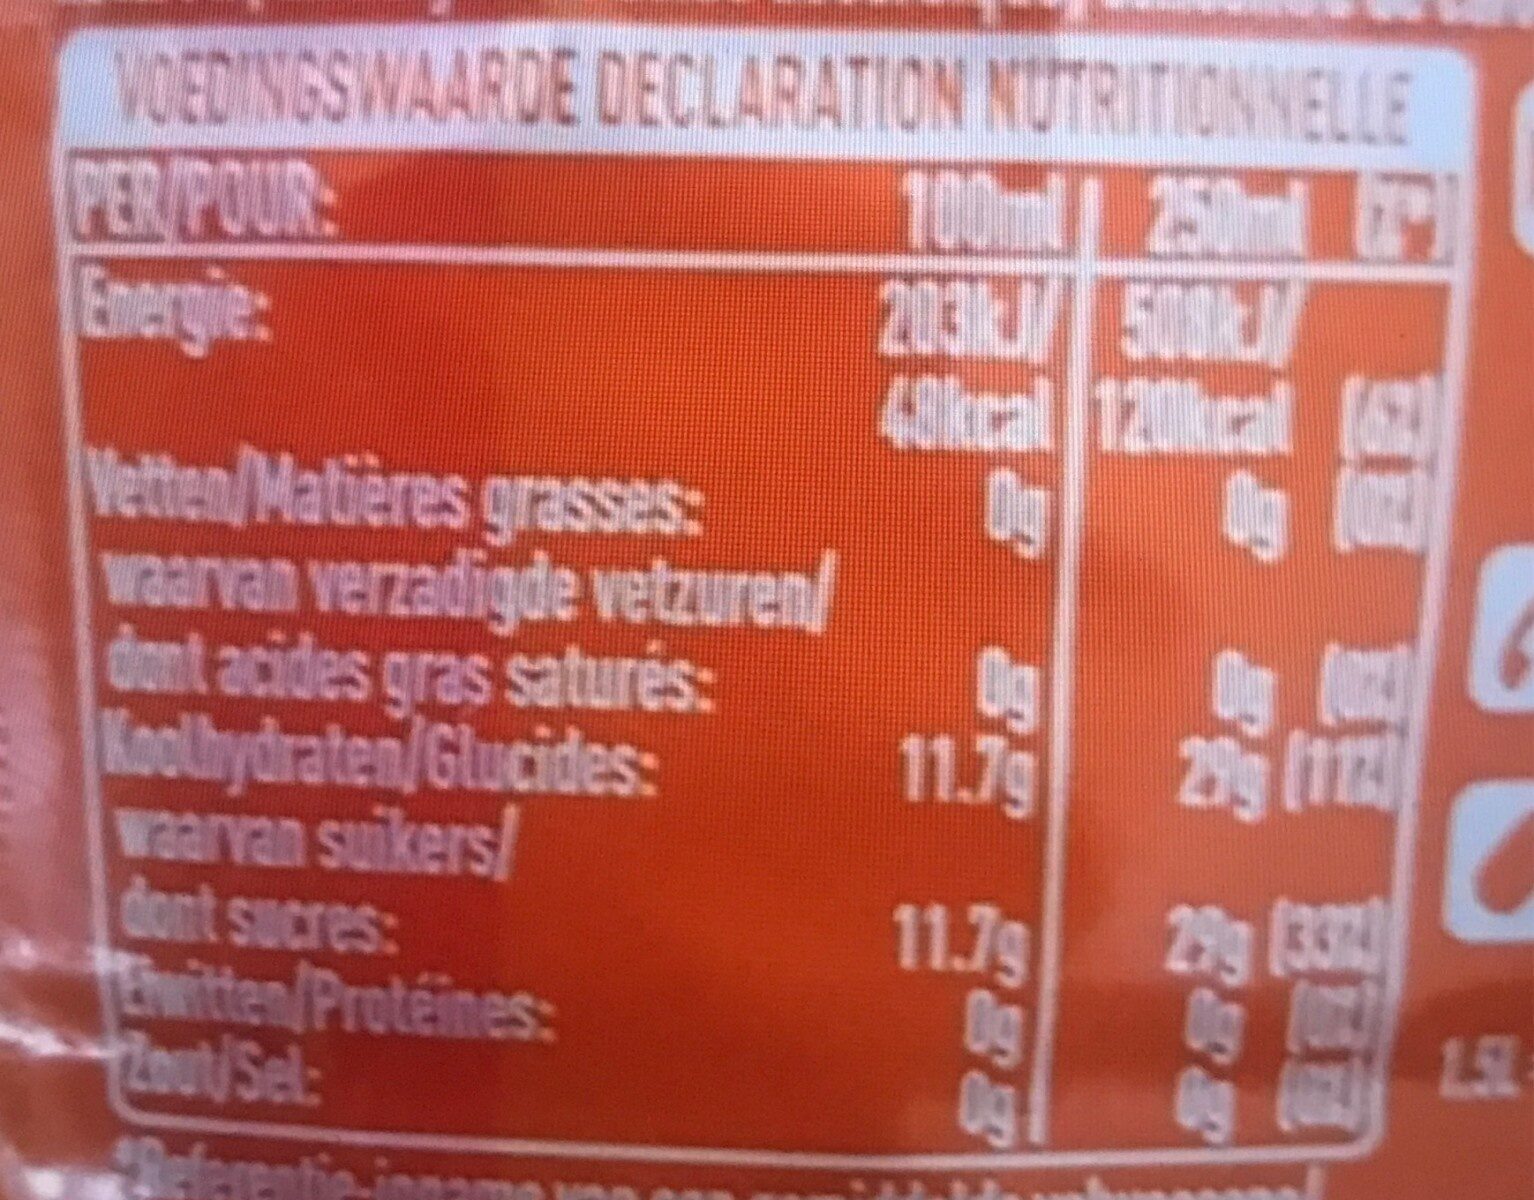 Fanta orange 1.5l - Informació nutricional - fr